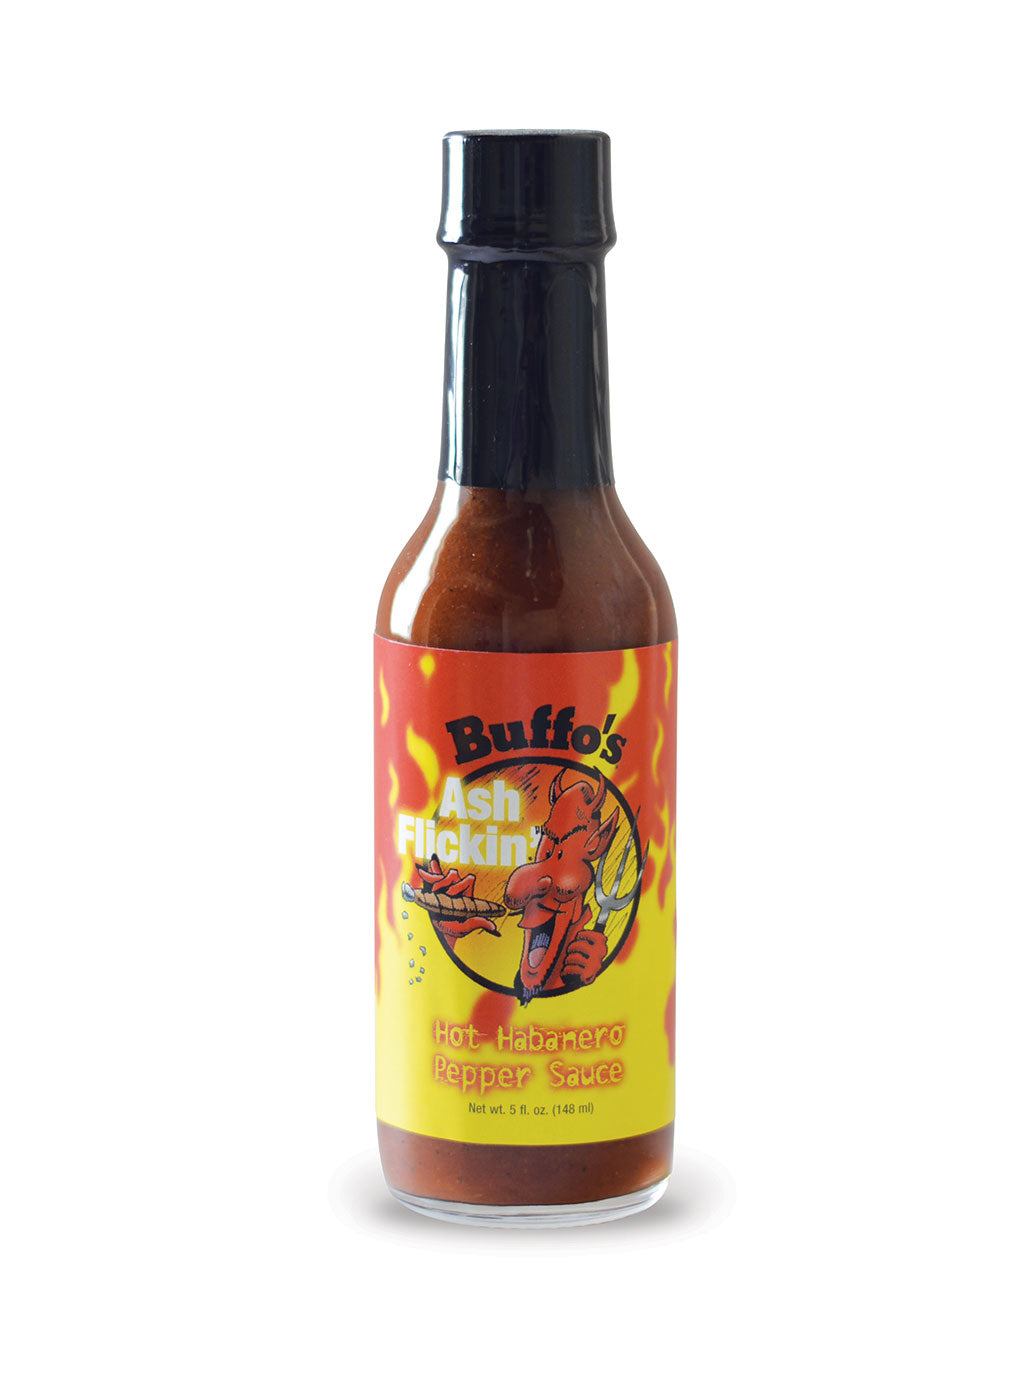 Buffo's Ash Flickin' Hot Habanero Pepper Sauce